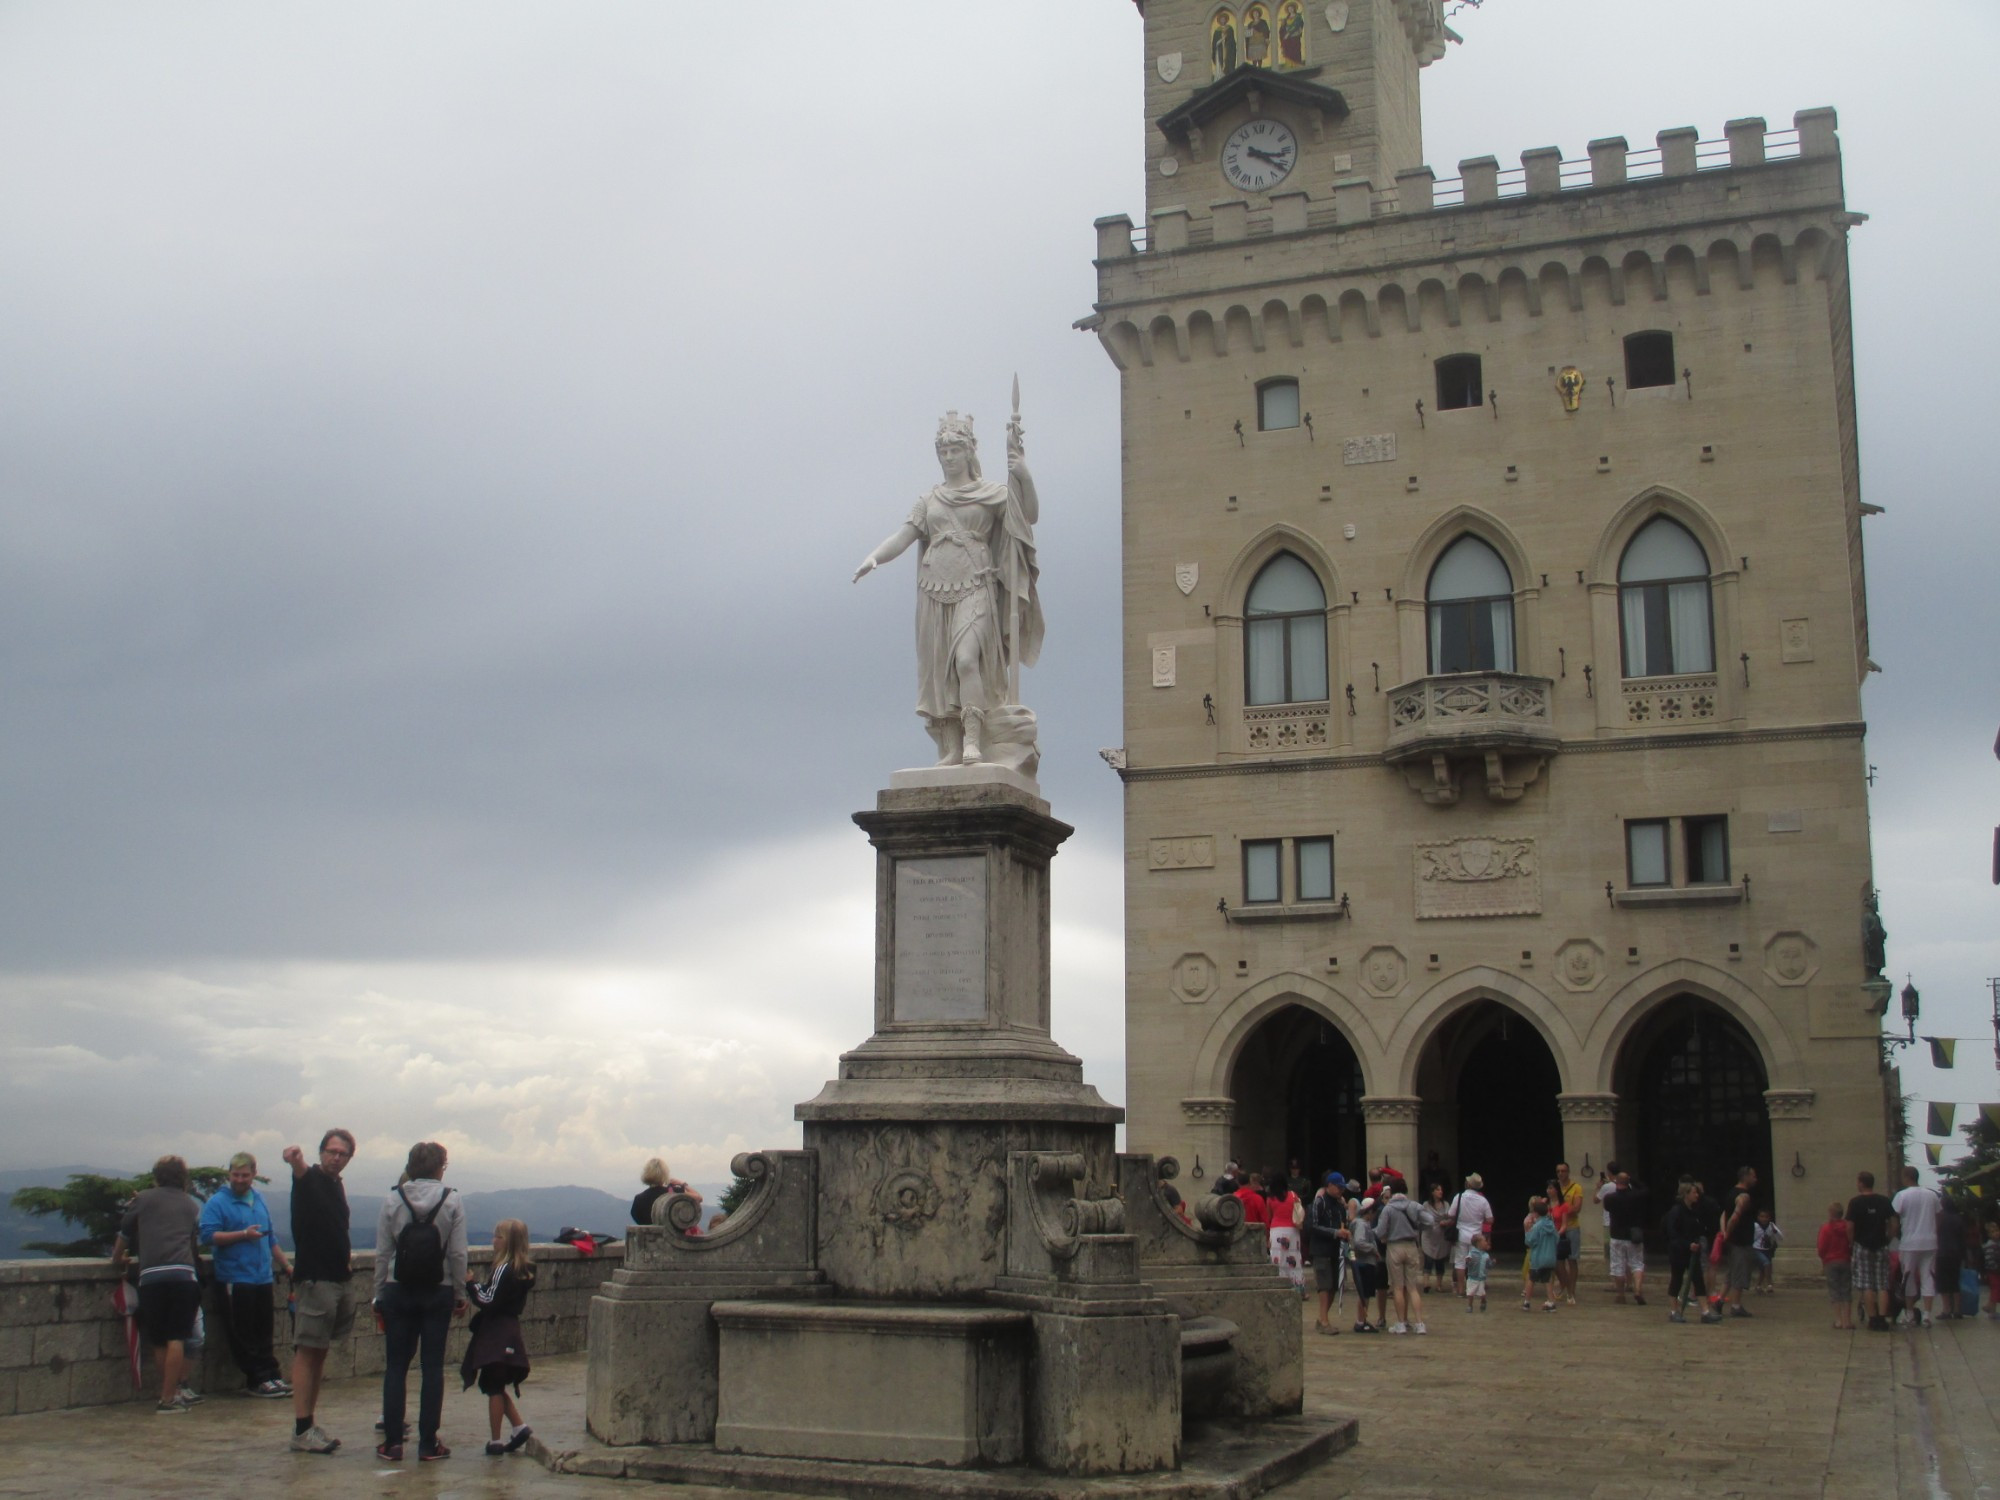 Сан-Марино. Статуя Свободы. (14.07.2014)